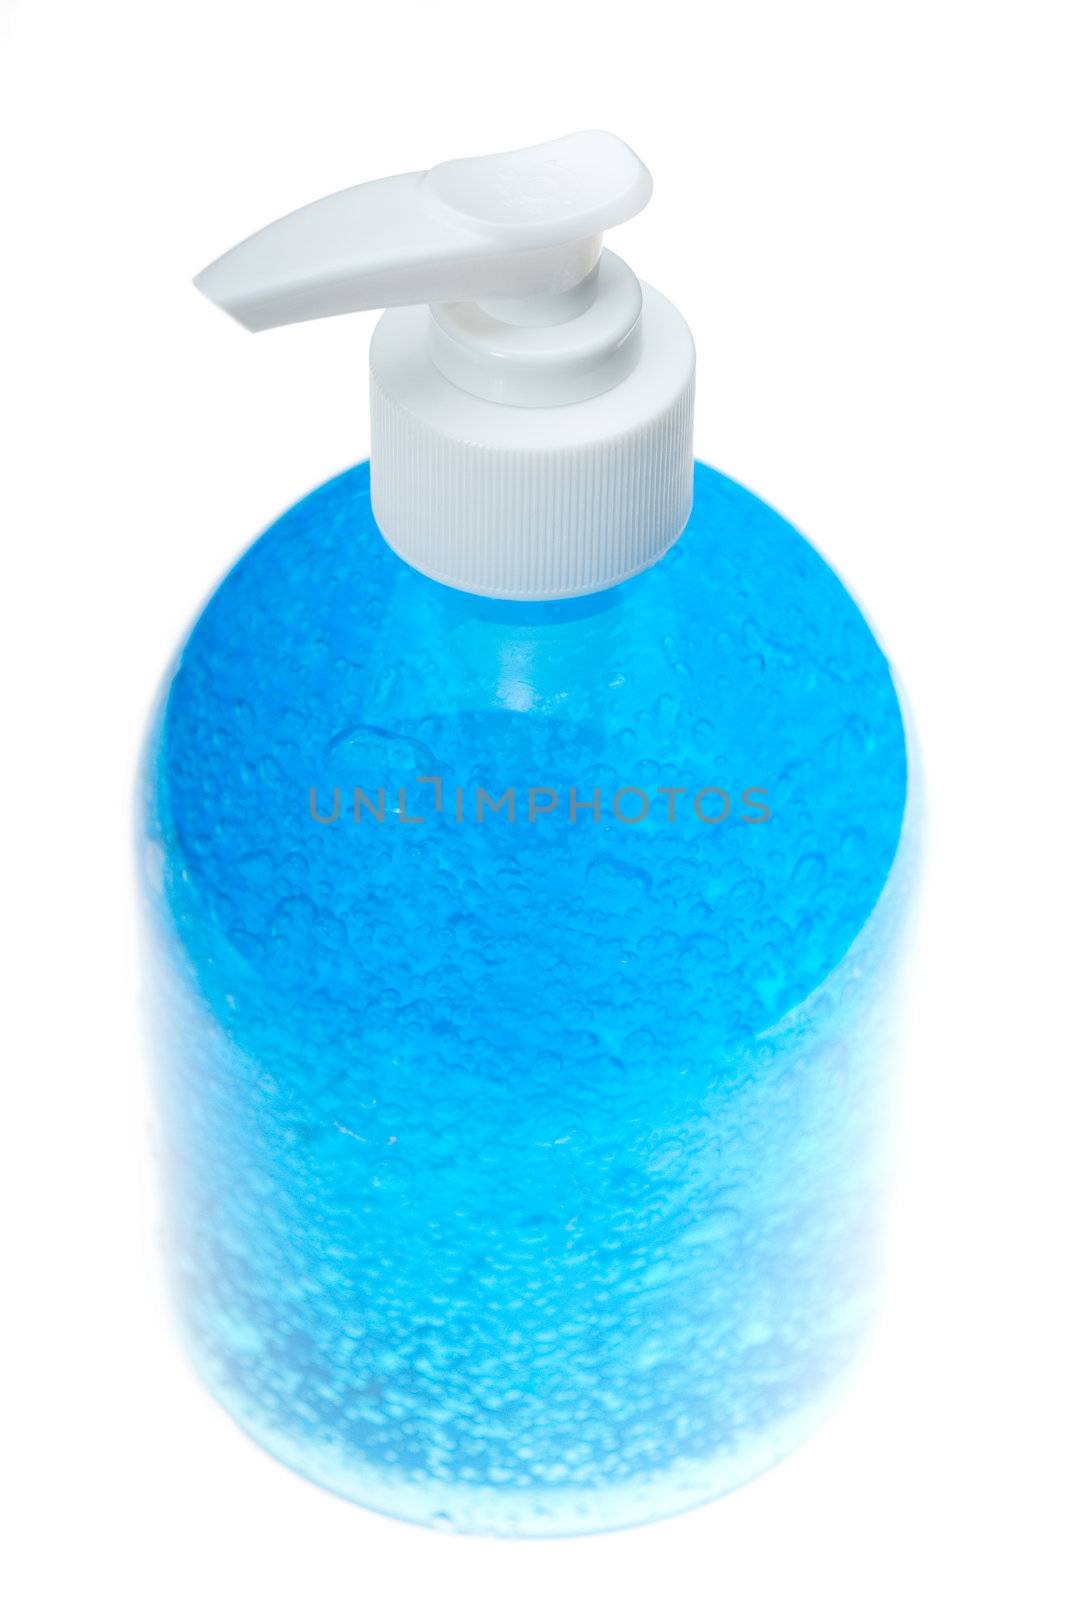 colorfull hair gel bottle over white background